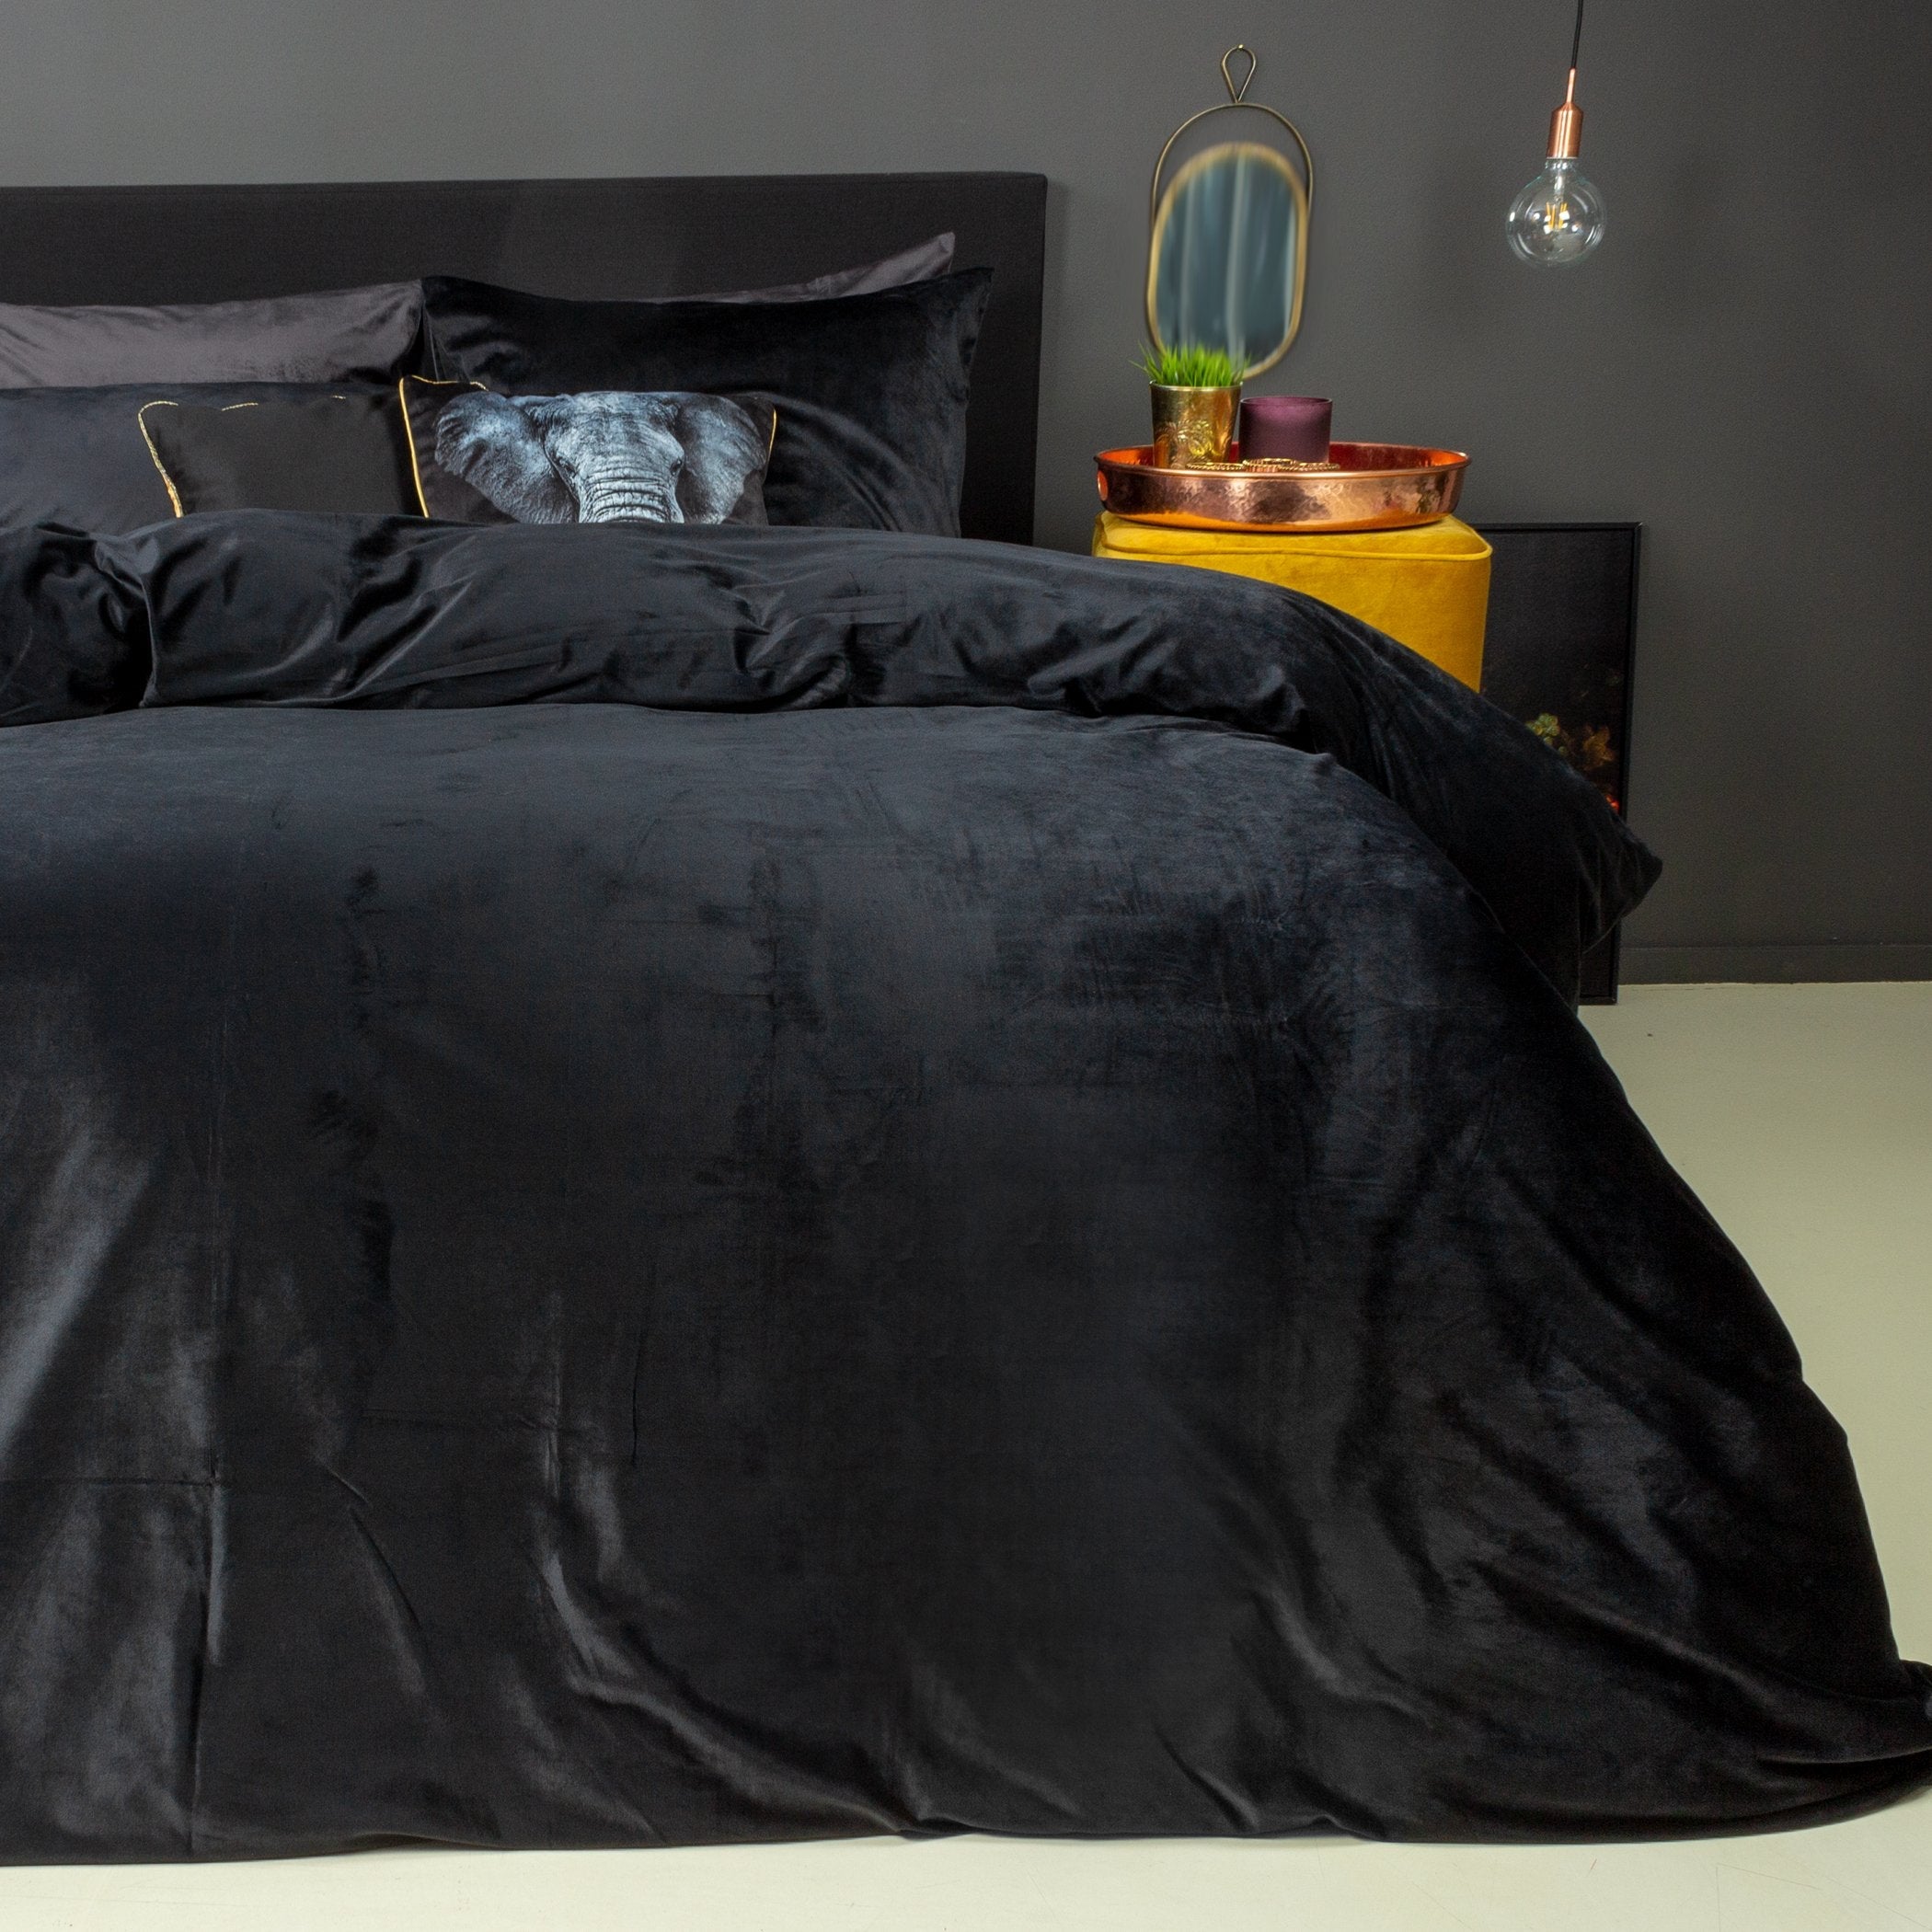 jury paddestoel tofu Velvet dekbedovertrekken: luxe comfort voor een elegant slaapkamer